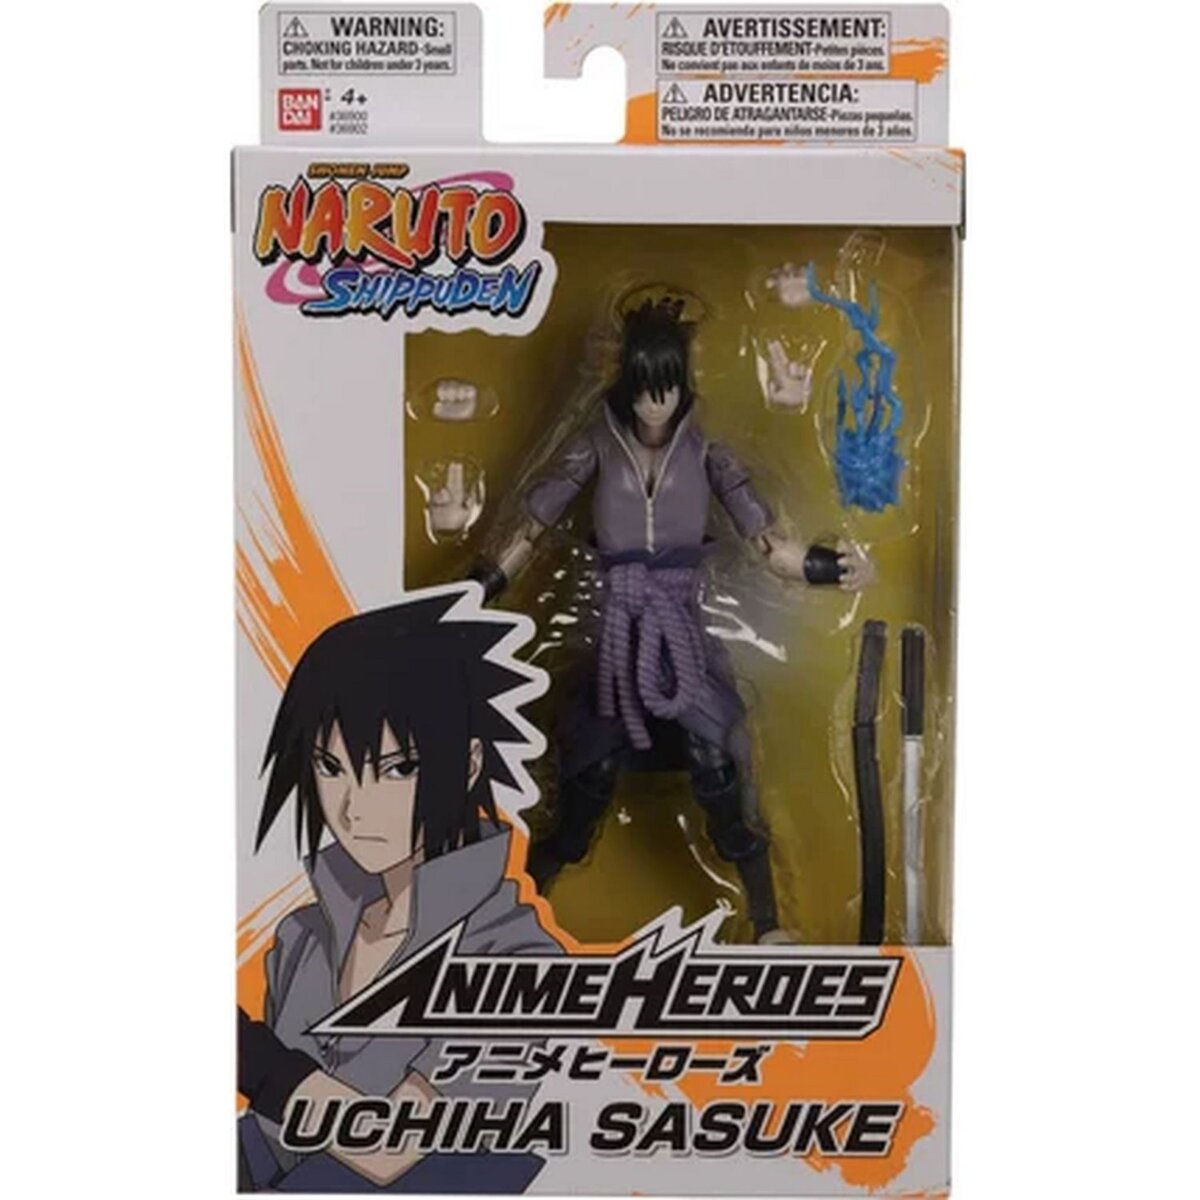 Naruto Shippuden : Sasuke Uchiwa figurine articulée 17 cm